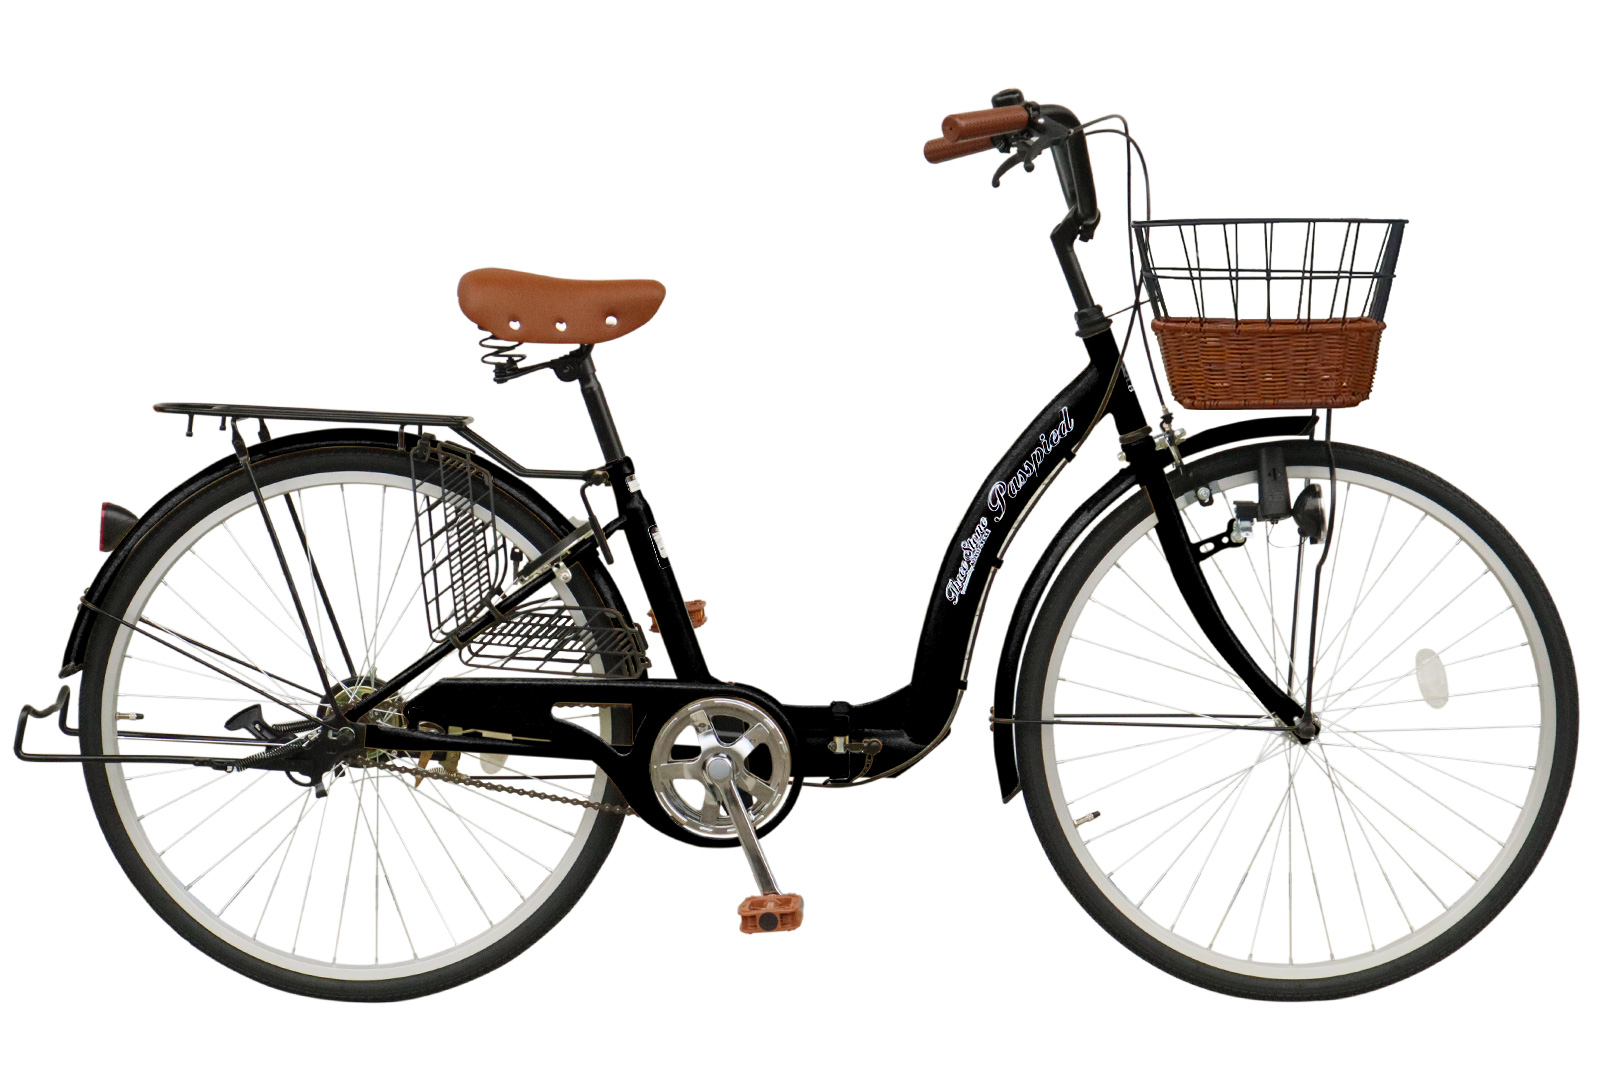 【新商品・空気入れ付き】AIJYU CYCLE シティサイクル 折りたたみ自転車 26インチ 折り畳...